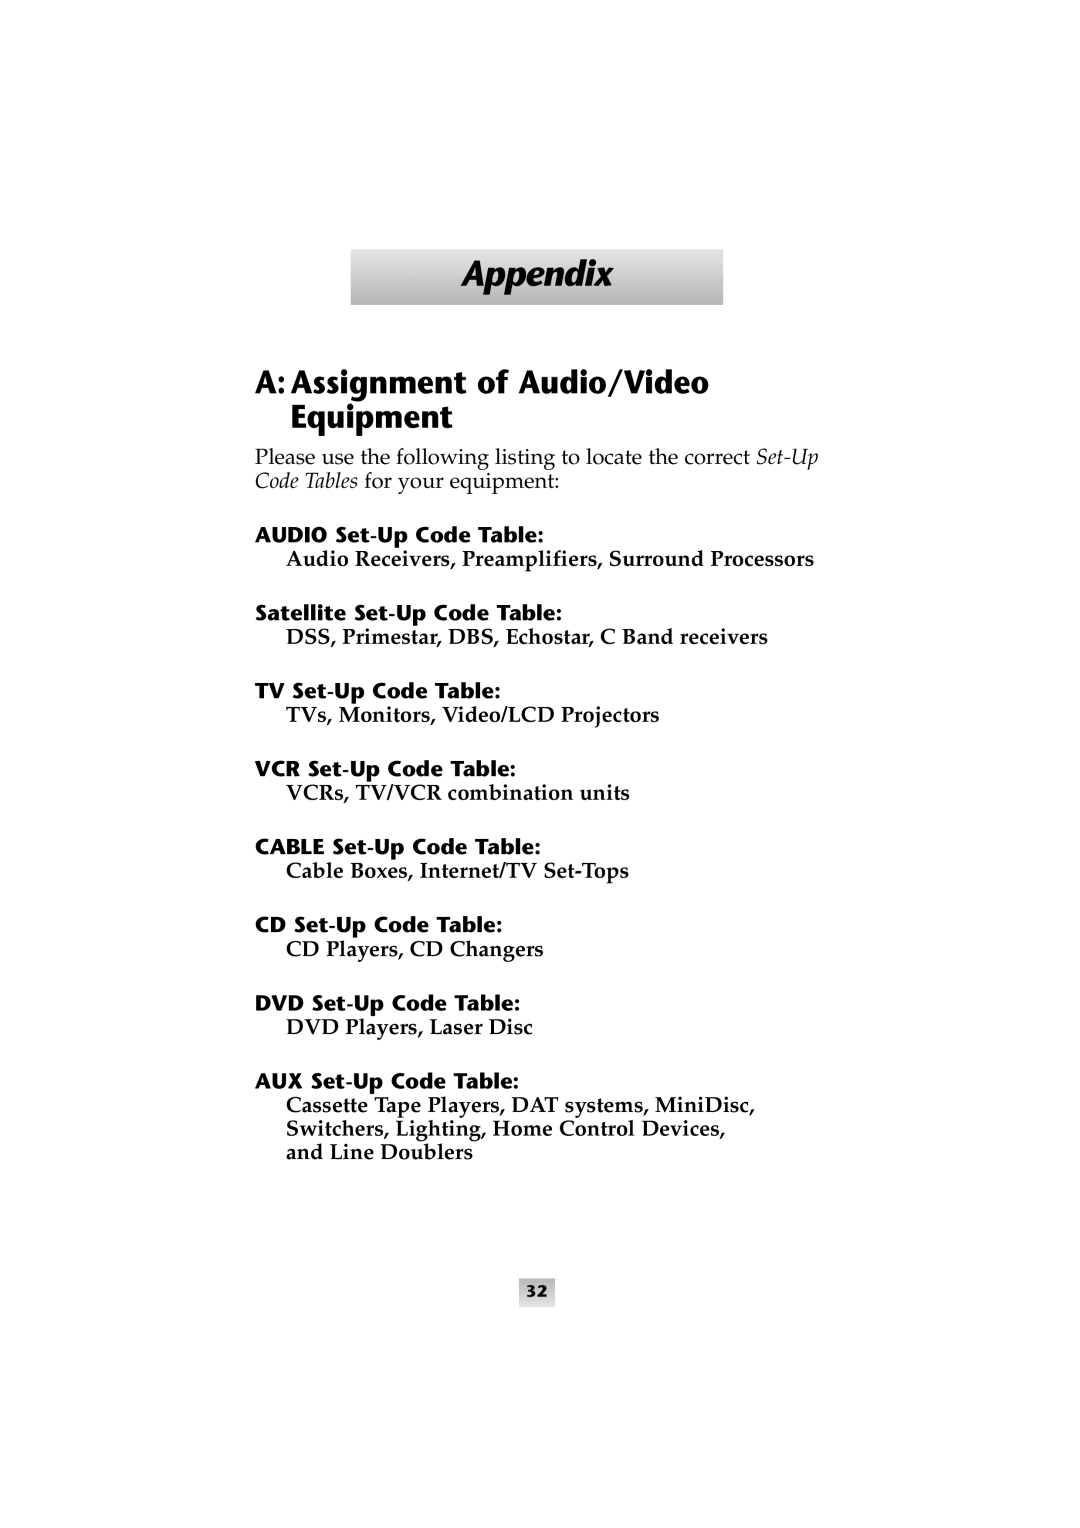 Universal Remote Control SL-8000 manual Appendix, AAssignment of Audio/Video Equipment, TVs, Monitors, Video/LCD Projectors 